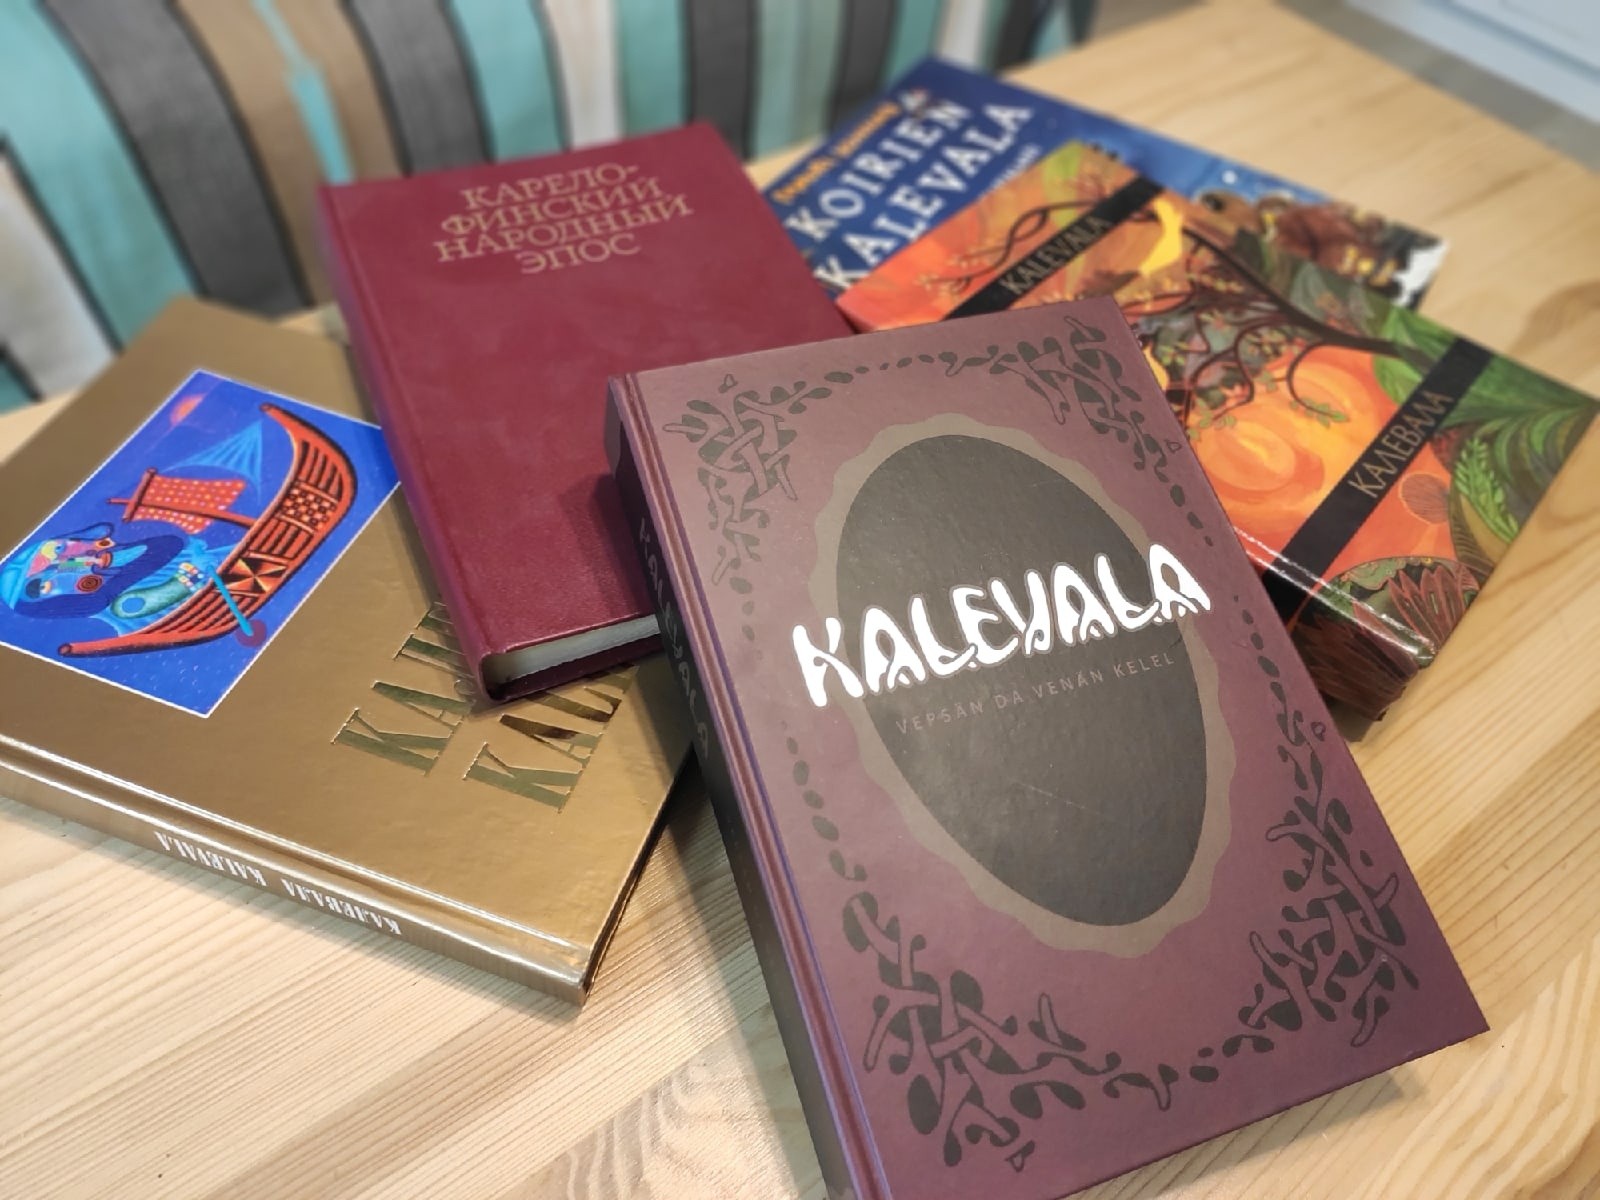 ”Калевала” переведена более чем на 60 языков. В 2022 году поэма вышла на вепсском языке. 16+ Фото: Екатерина Поспелова